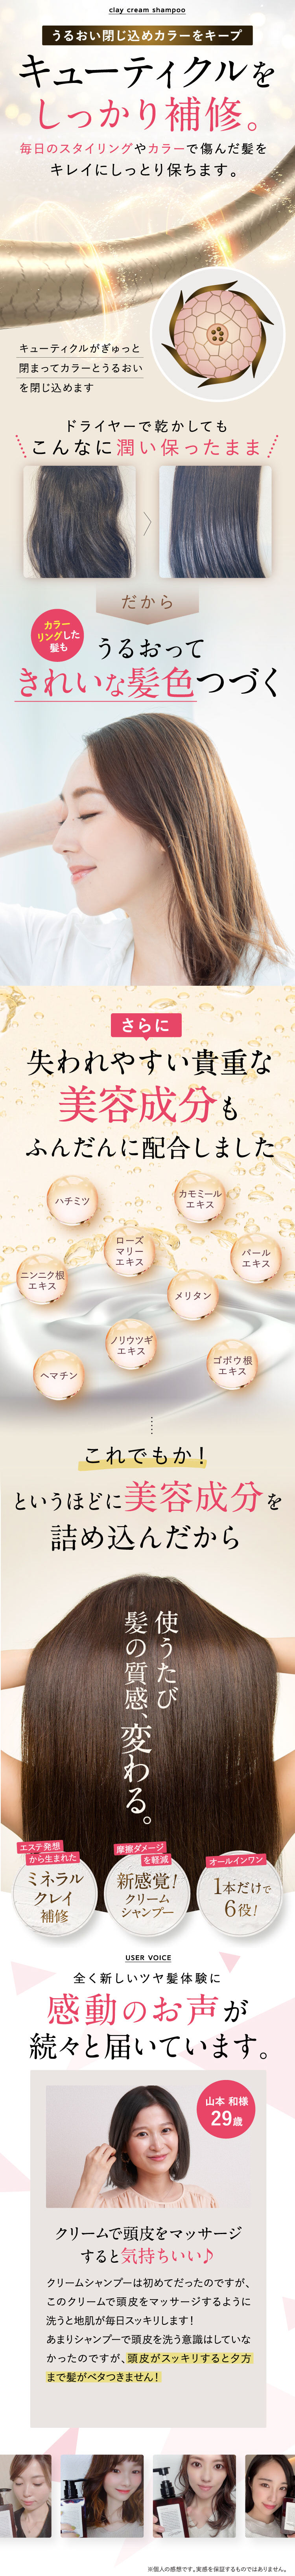 楽天市場】【総合1位獲得】クレイクリーム シャンプー 380g 